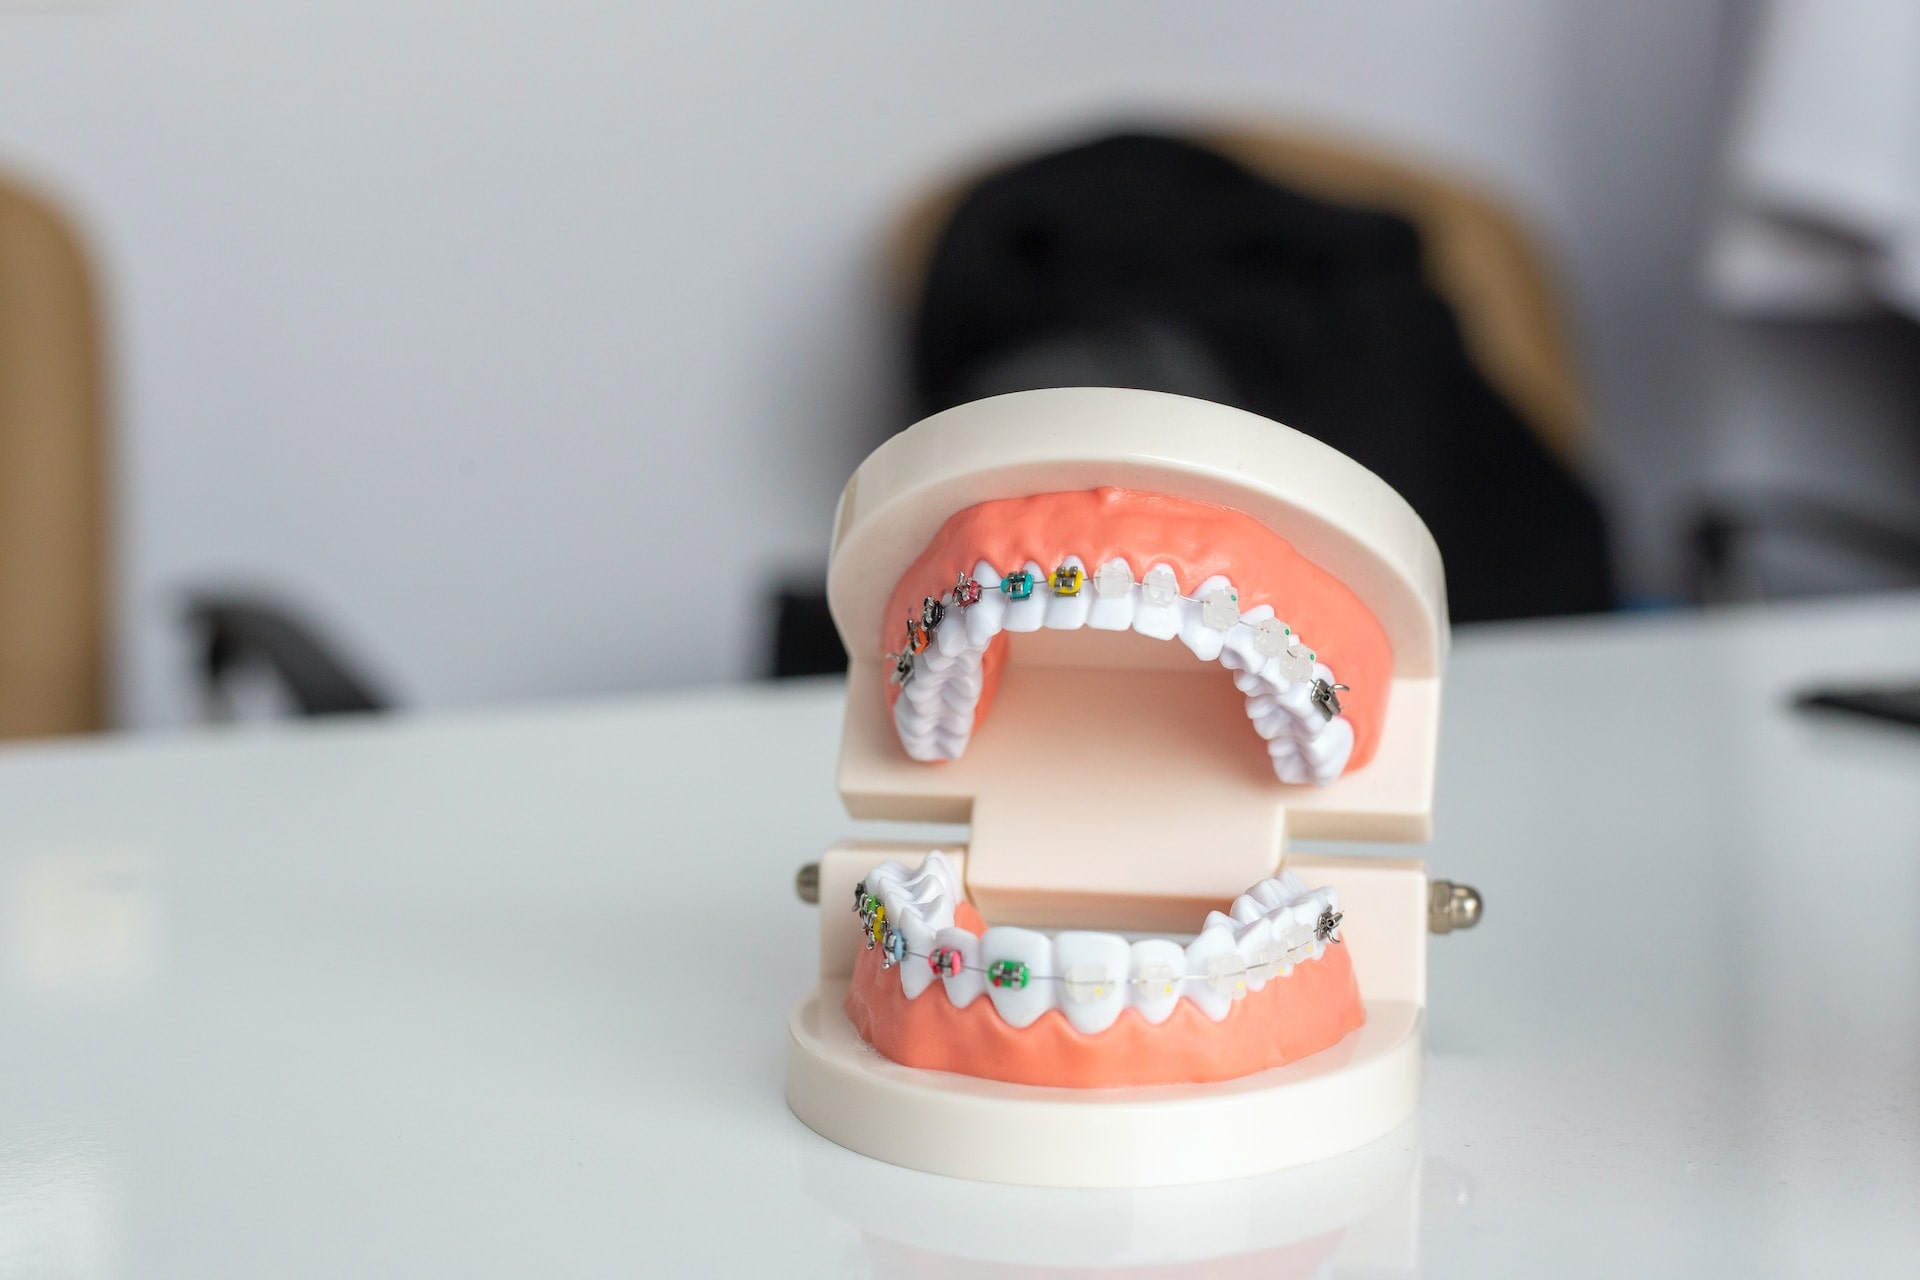 Jak długo bolą zęby po założeniu aparatu?